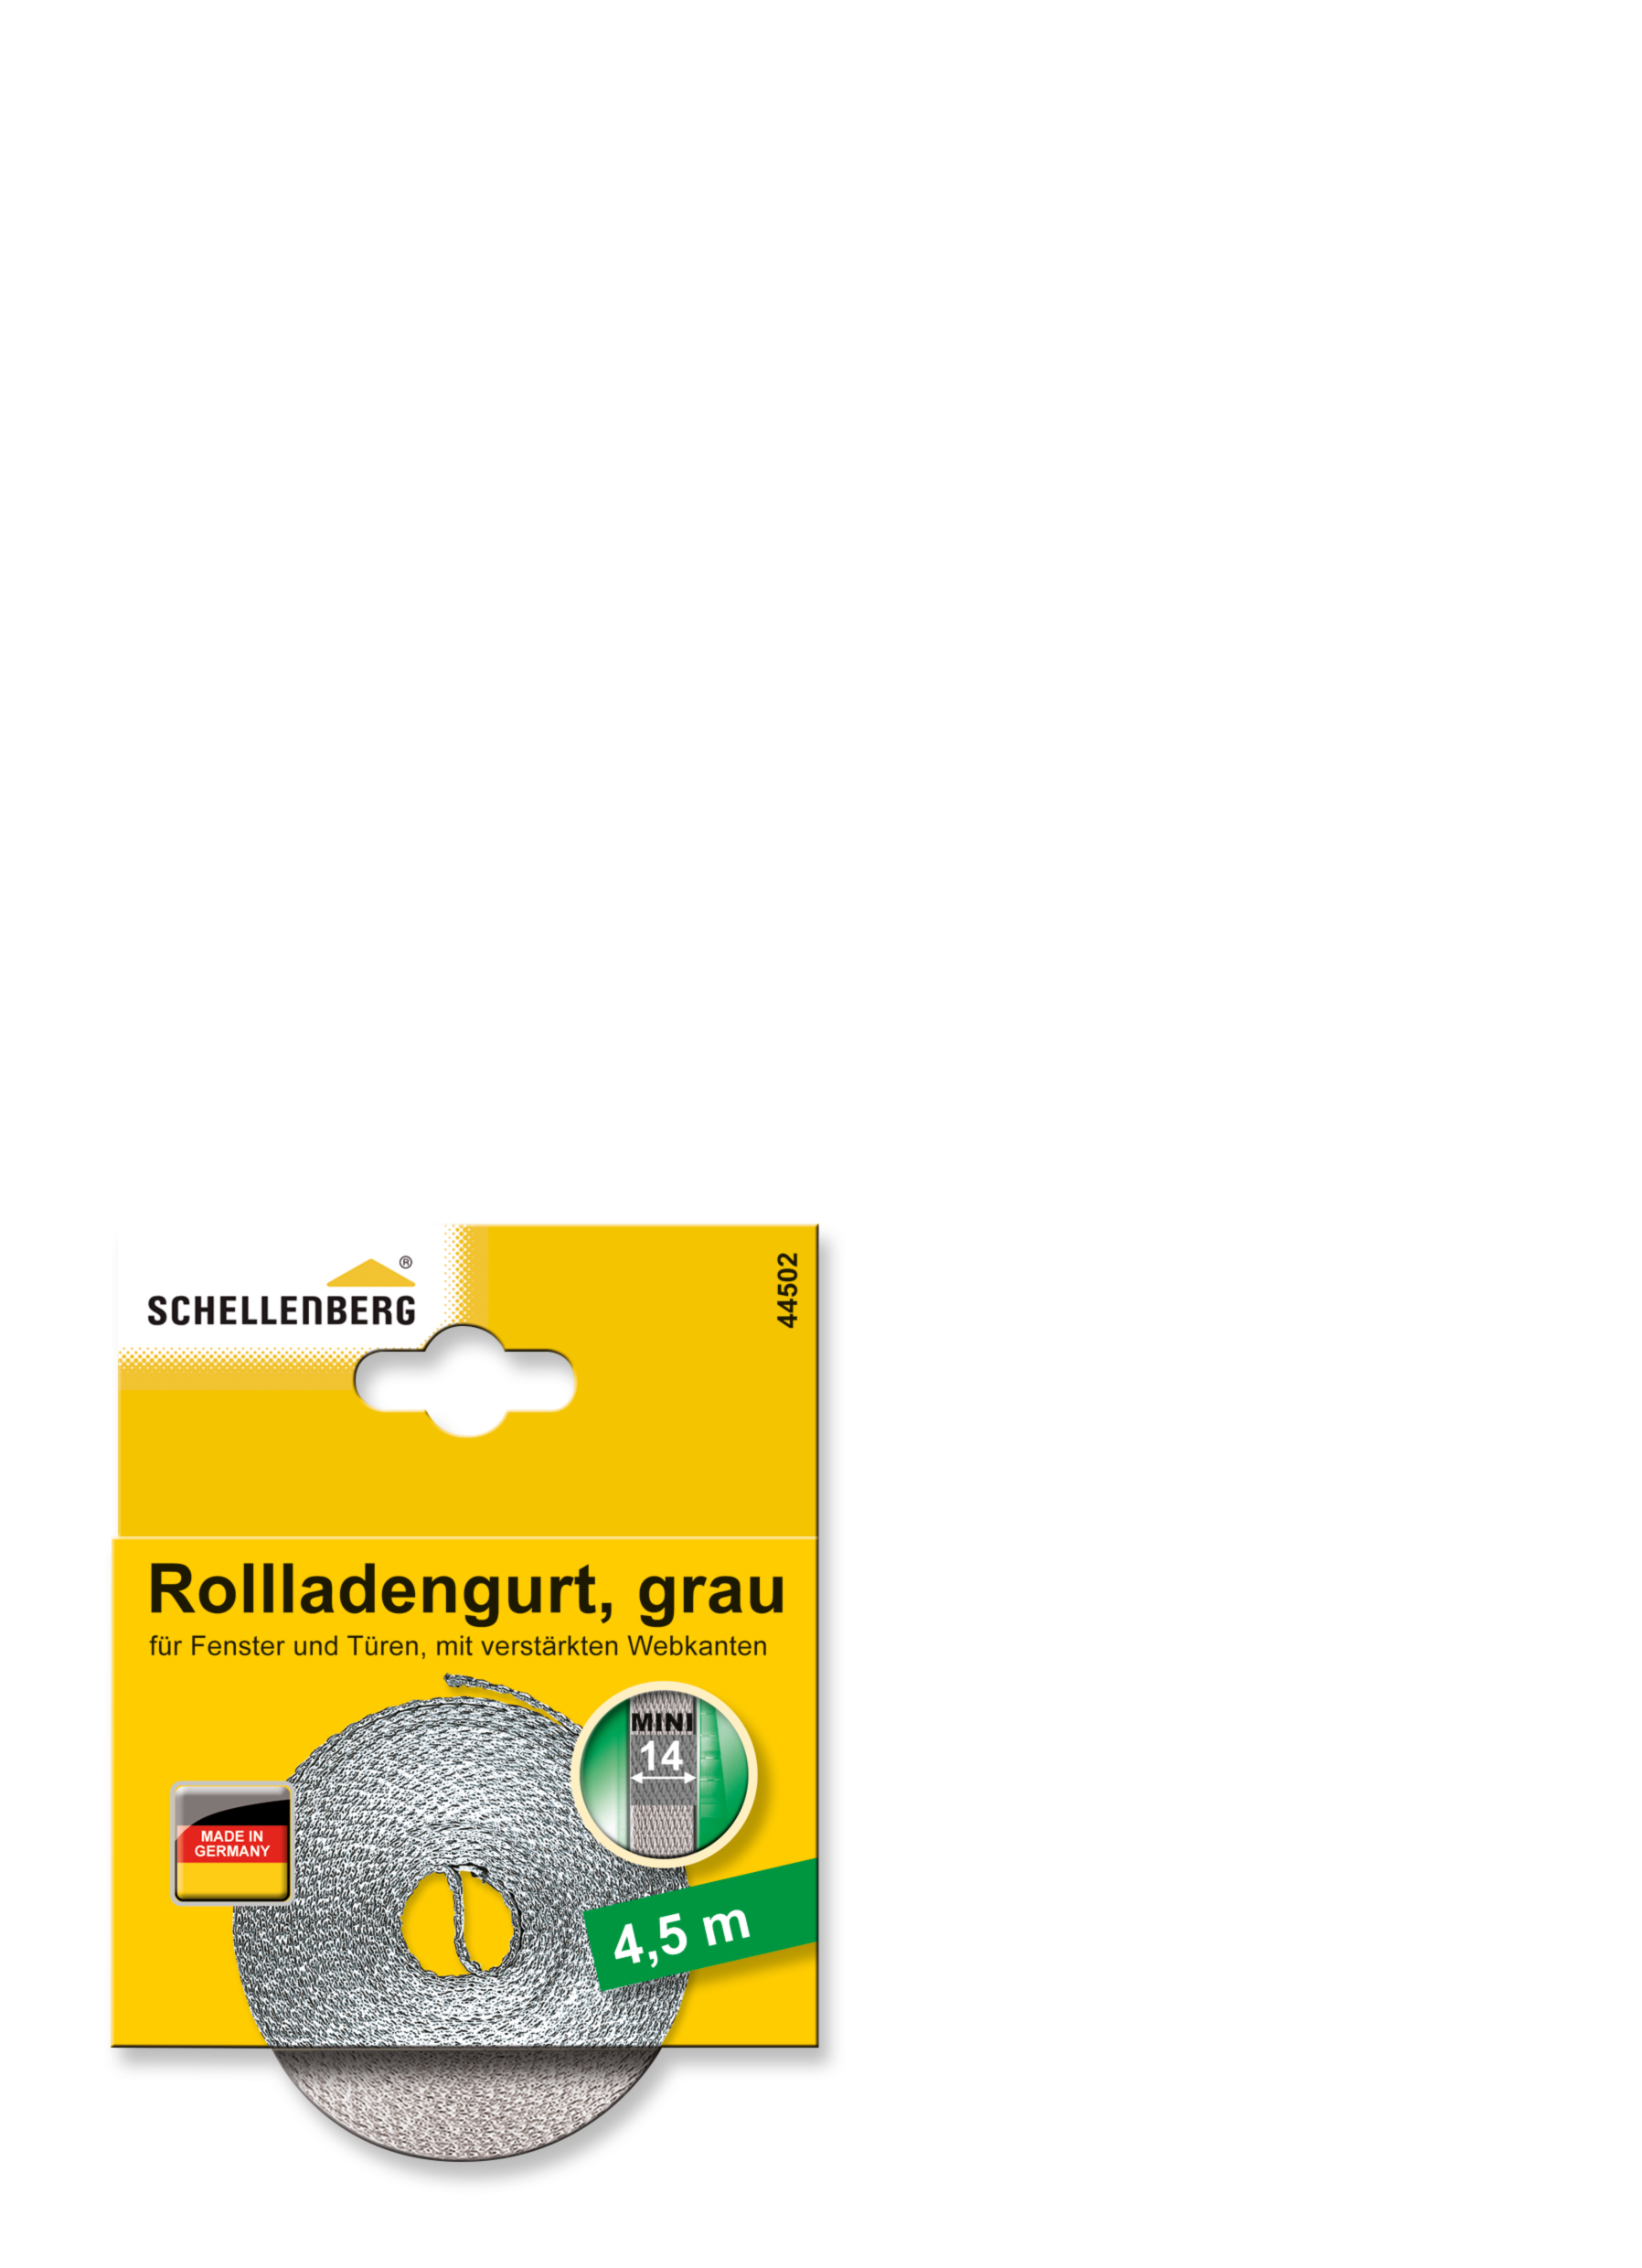 SCHELLENBERG Rollladengurt 14 mm/4,5 m grau 